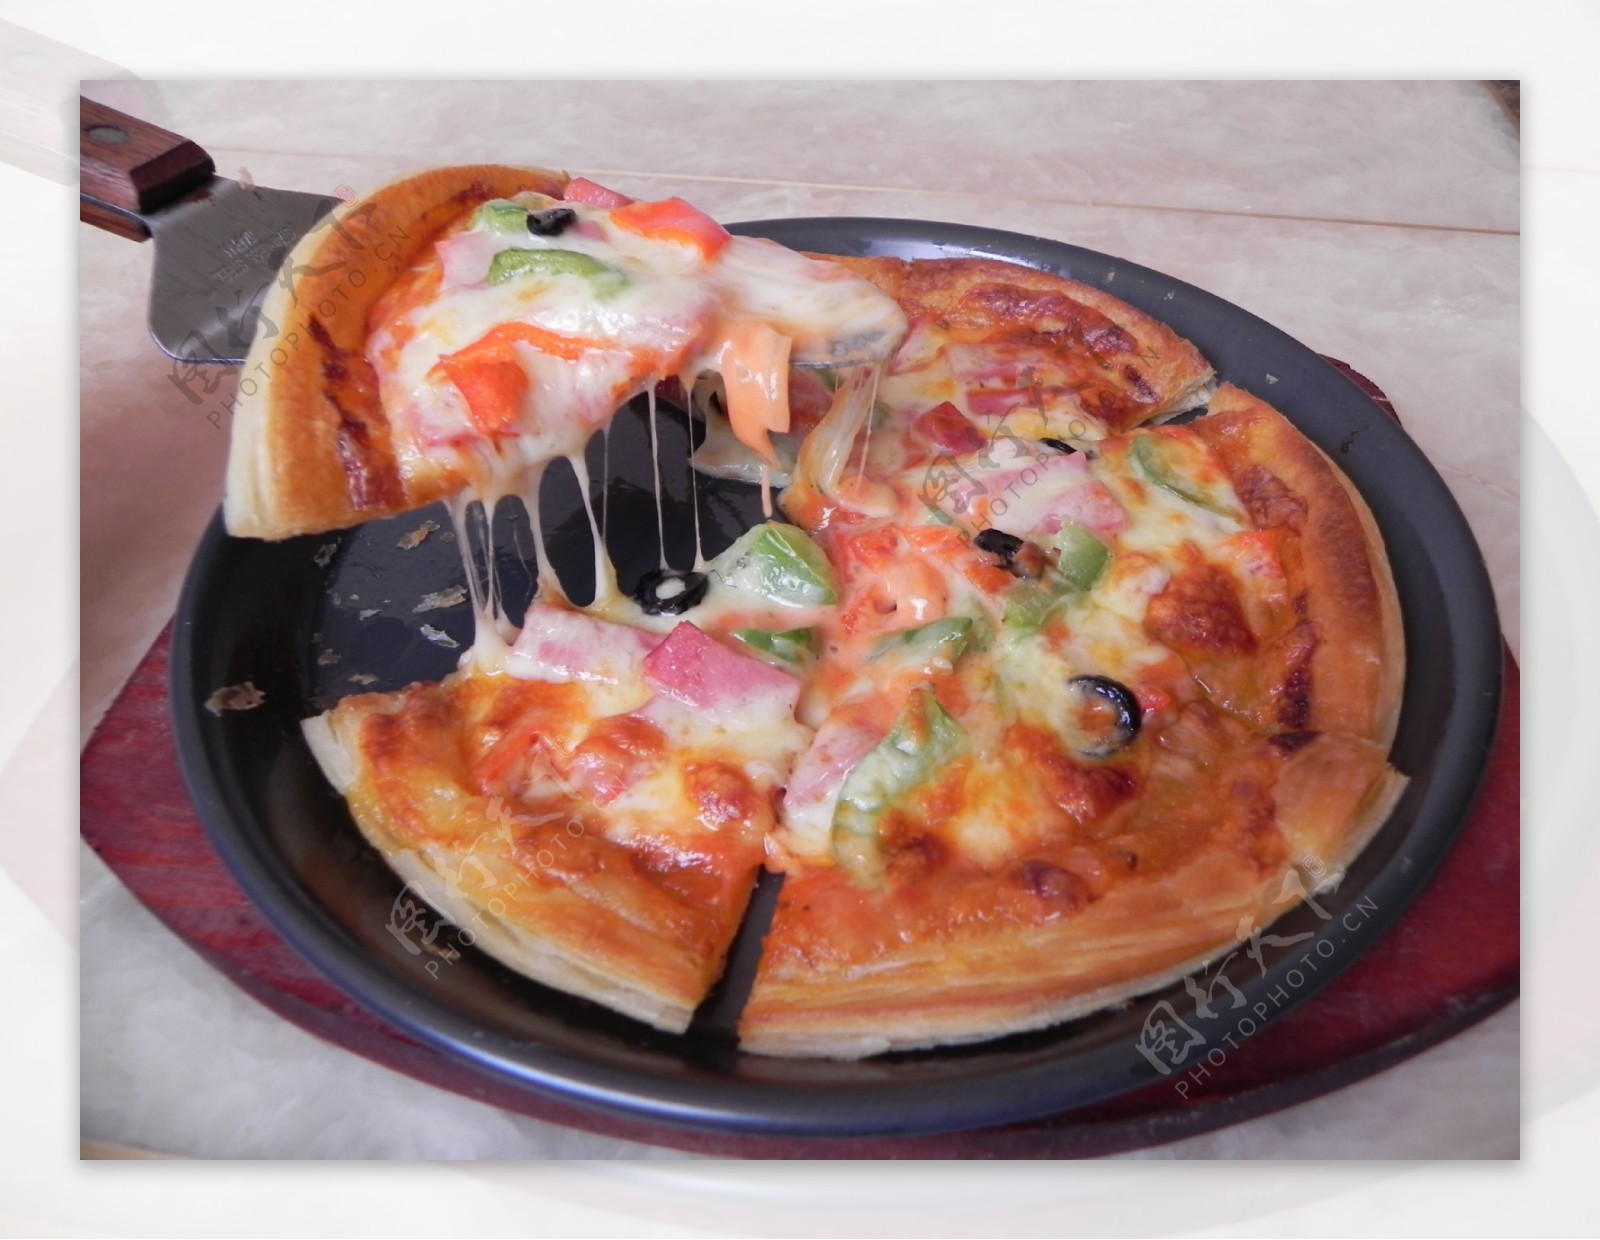 逐步的美食自制的比萨第4步骤涂了在面团的番茄酱 库存图片. 图片 包括有 酥皮点心, 薄饼, 主厨, 成份 - 212713337